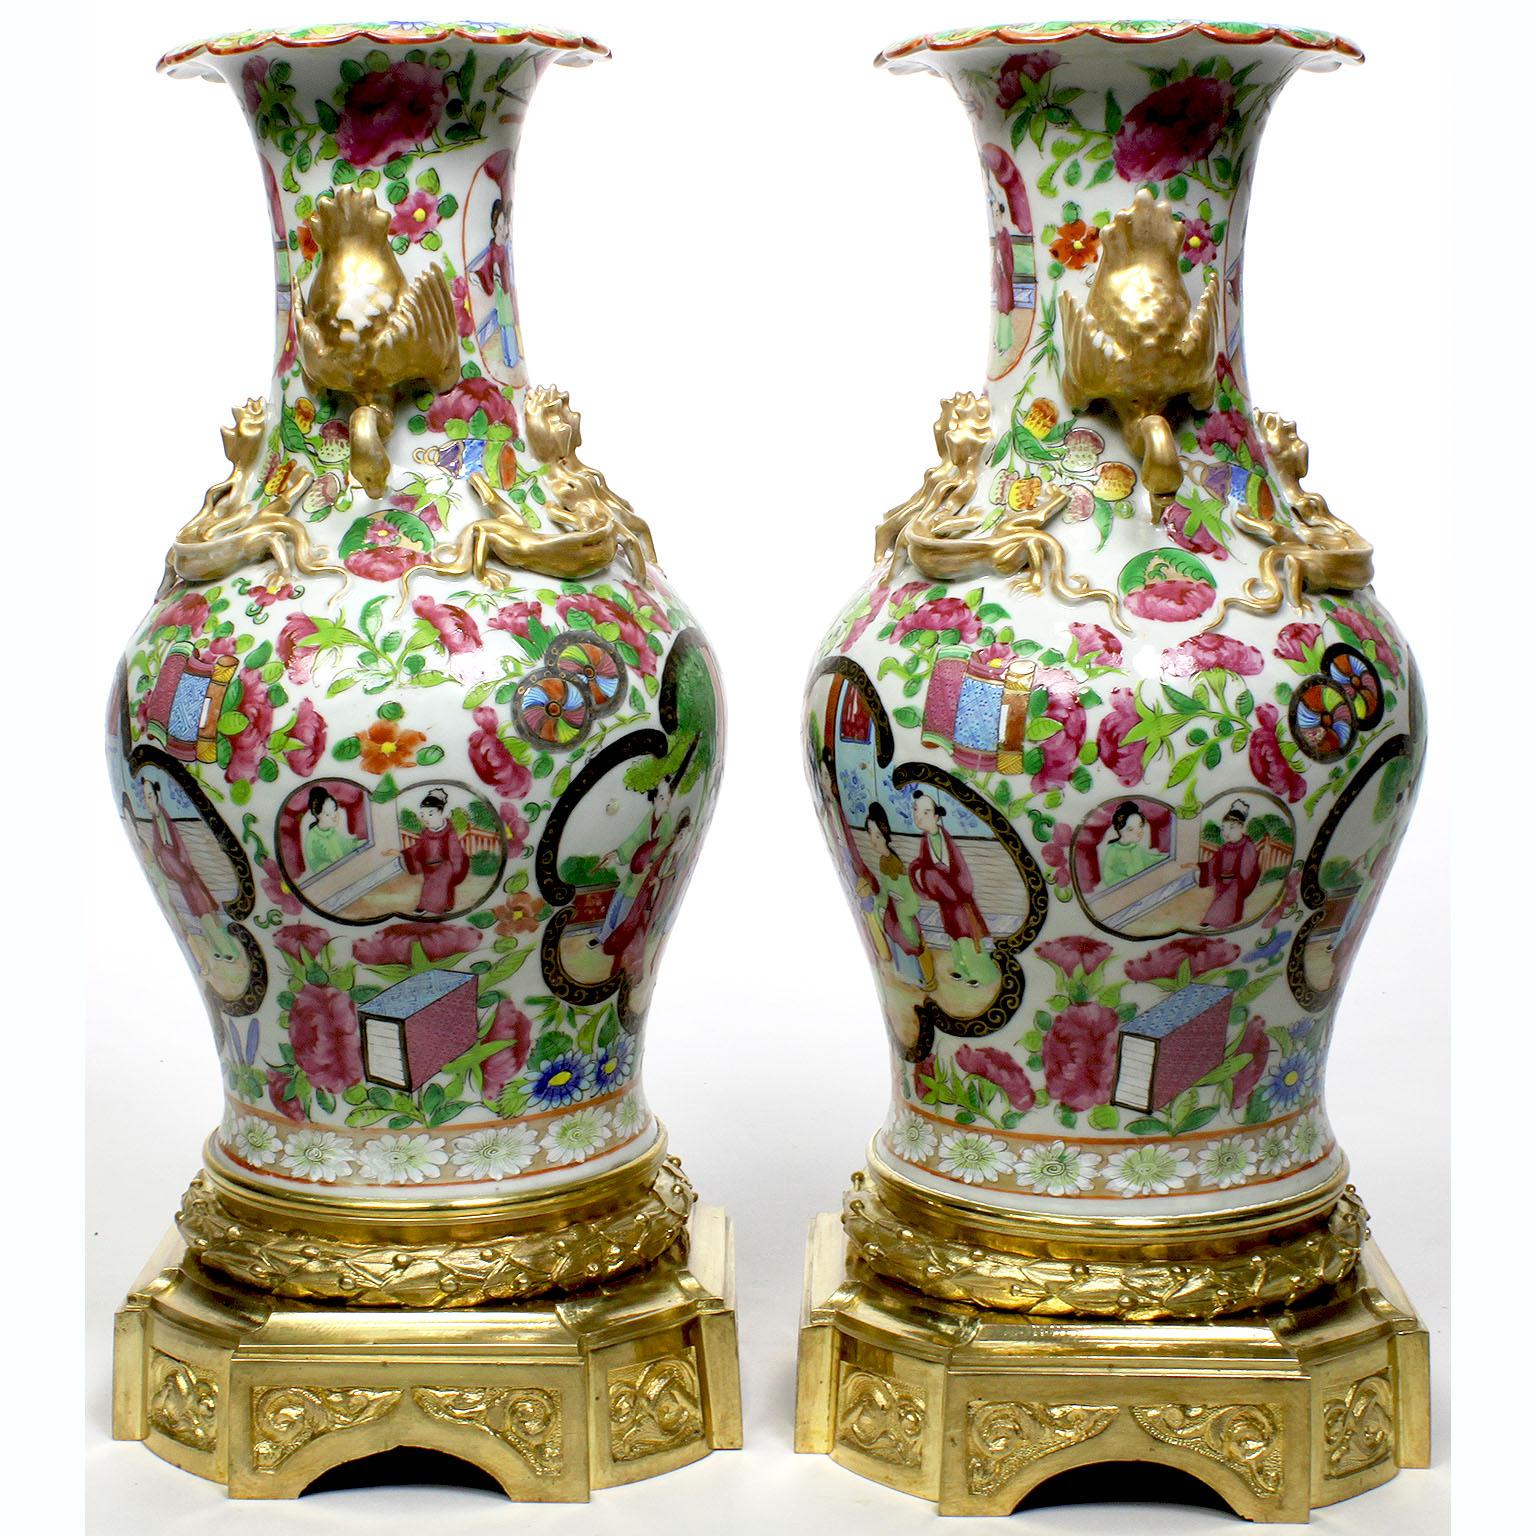 Paire de vases de style Louis XVI en porcelaine de famille rose d'exportation chinoise, montés sur bronze doré. Le corps ovoïde en porcelaine peinte à la main avec deux scènes d'une présentation d'épée à la cour royale, avec des montures stylisées